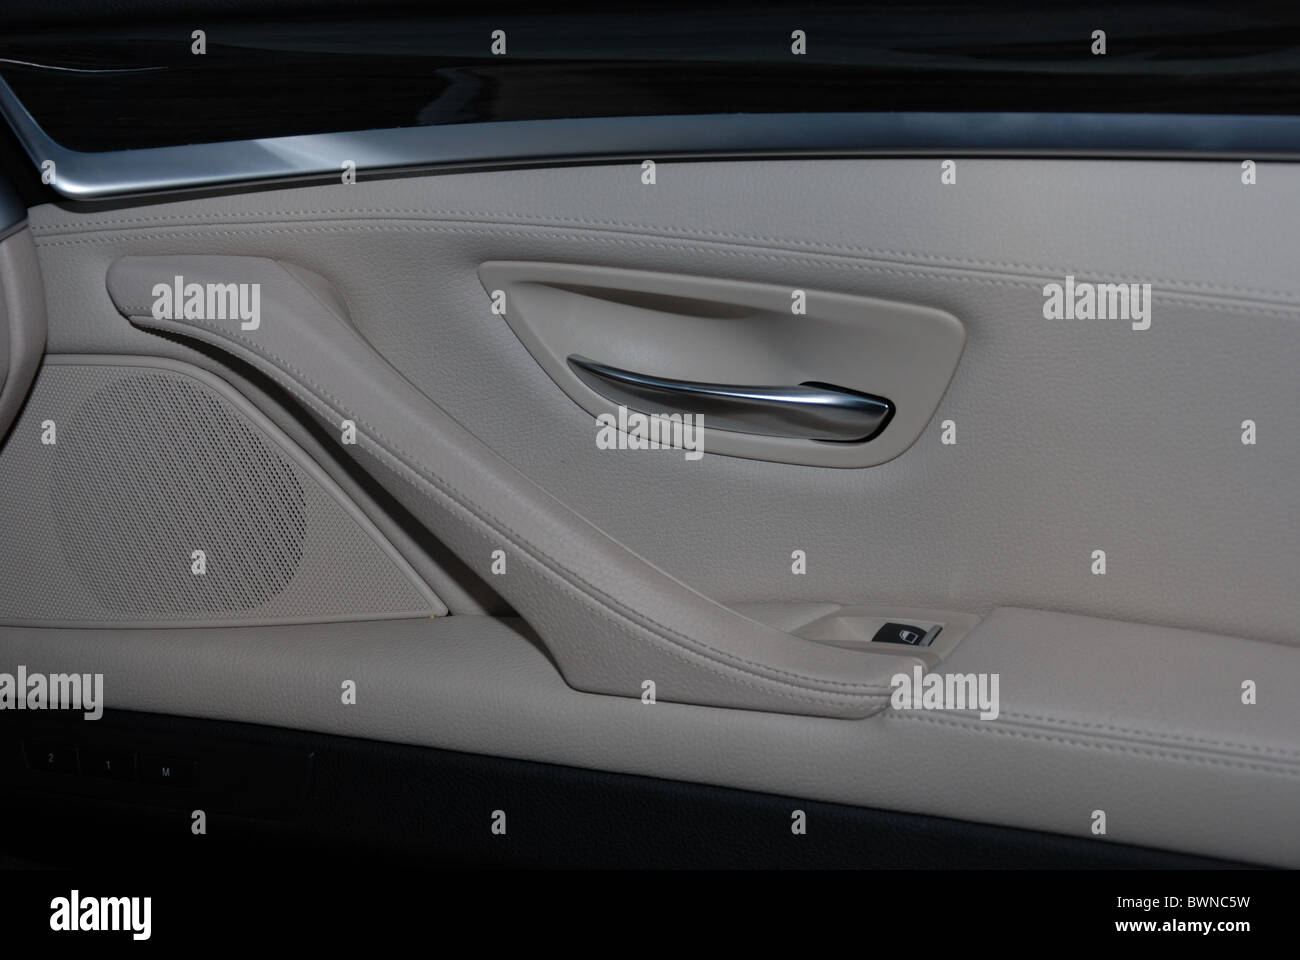 BMW 535i - 2010 - Mon argent métallisé - quatre portes (4D) - L'Allemand Premium berline de classe supérieure, E segment (segment) exécutif - portes Banque D'Images